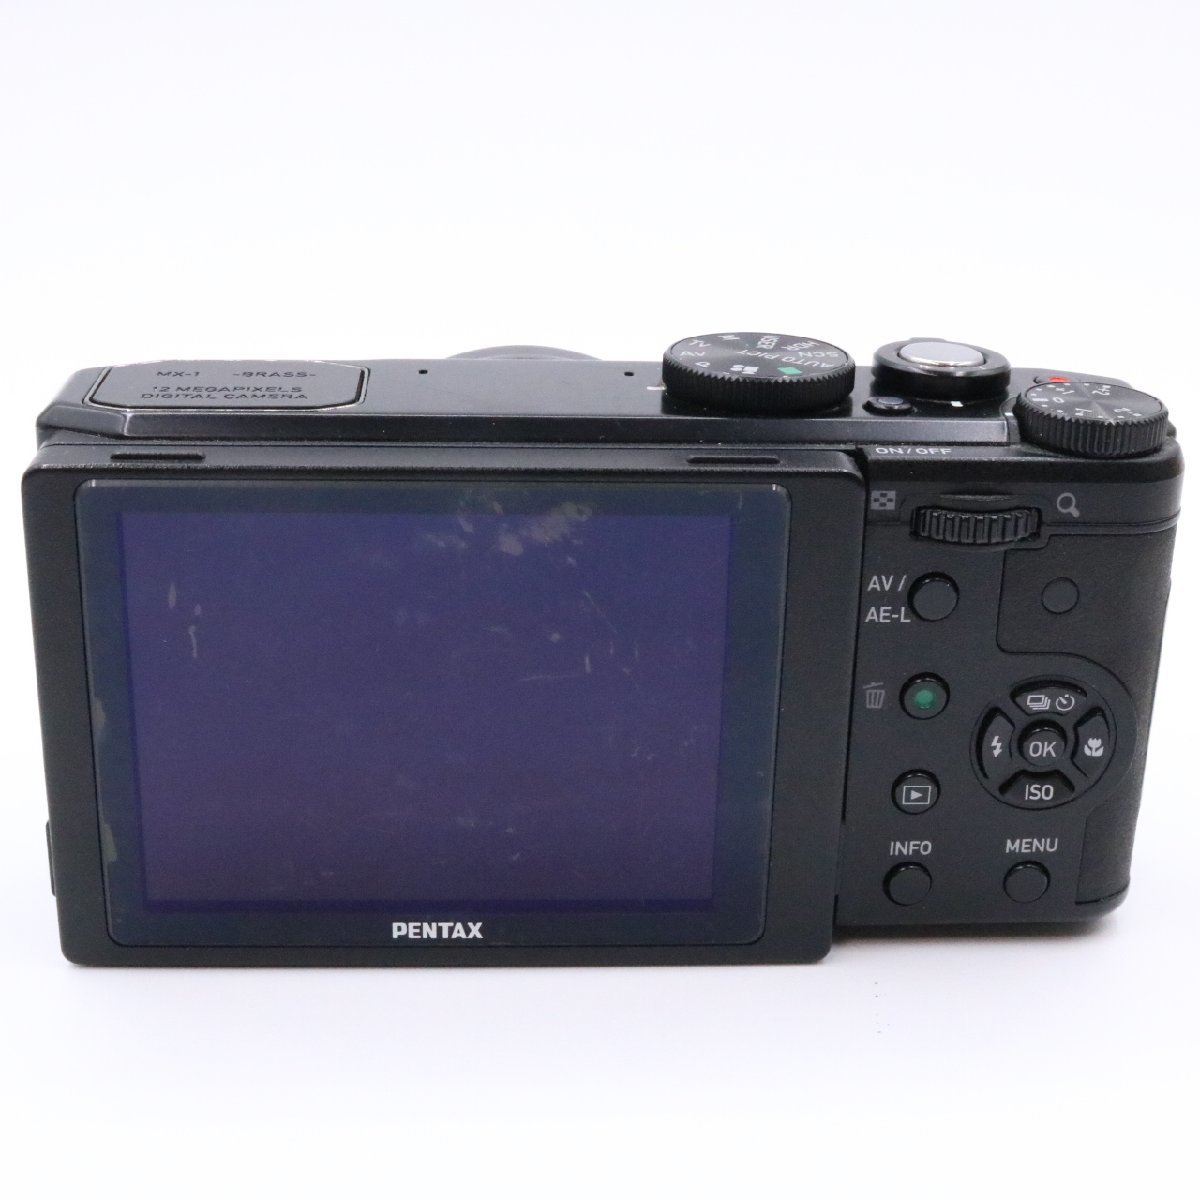 高質 PENTAX デジタルカメラ MX-1 クラシックブラック 1.7インチ大型CMOSセンサー F1.8大口径レンズ PEN